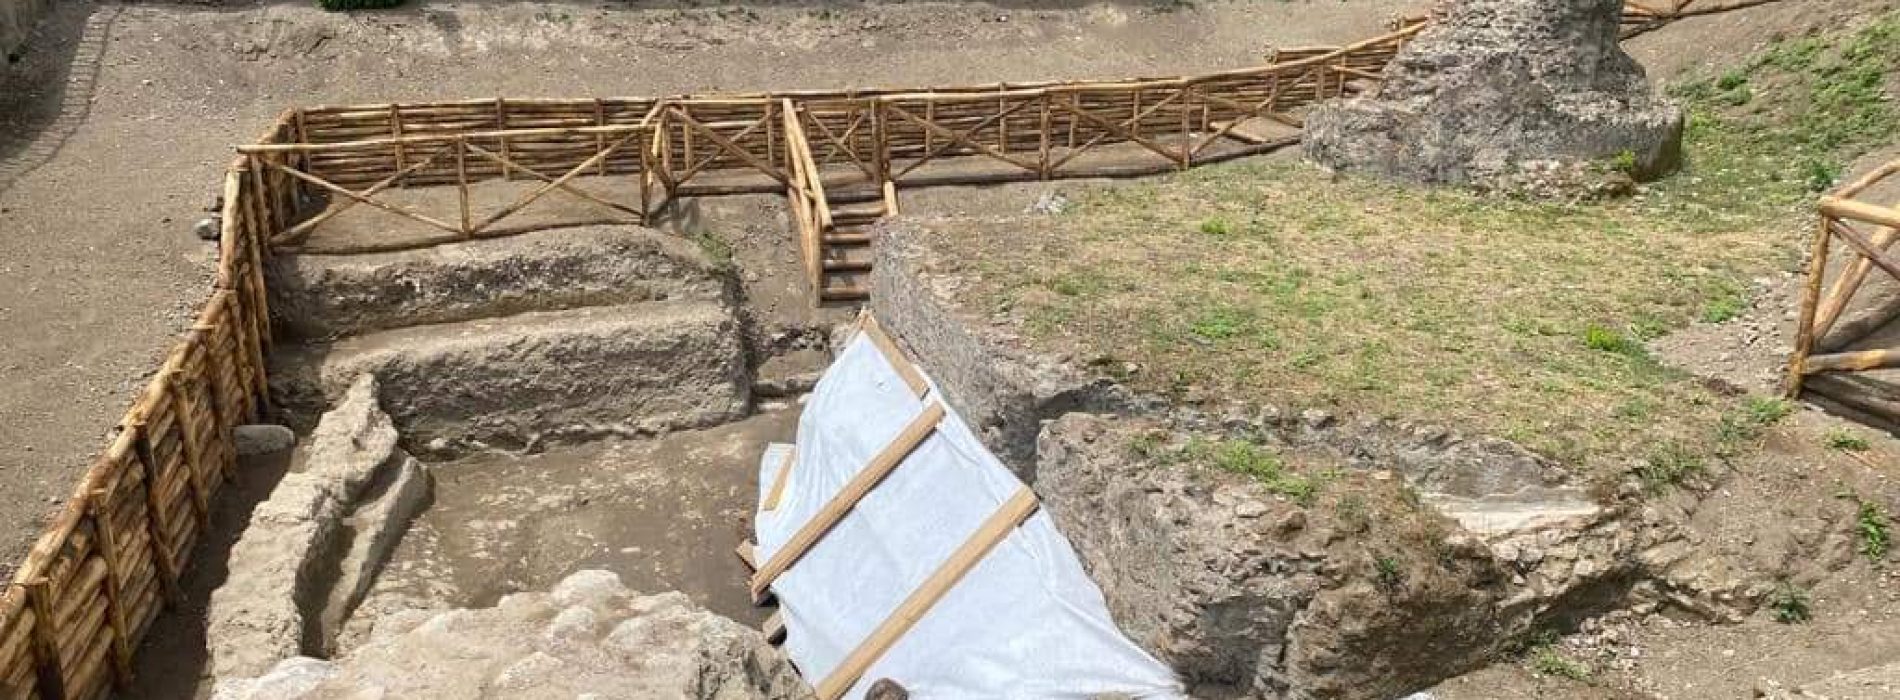 Capua Vetere, l’archeologia fa riscoprire tutta l’antica città